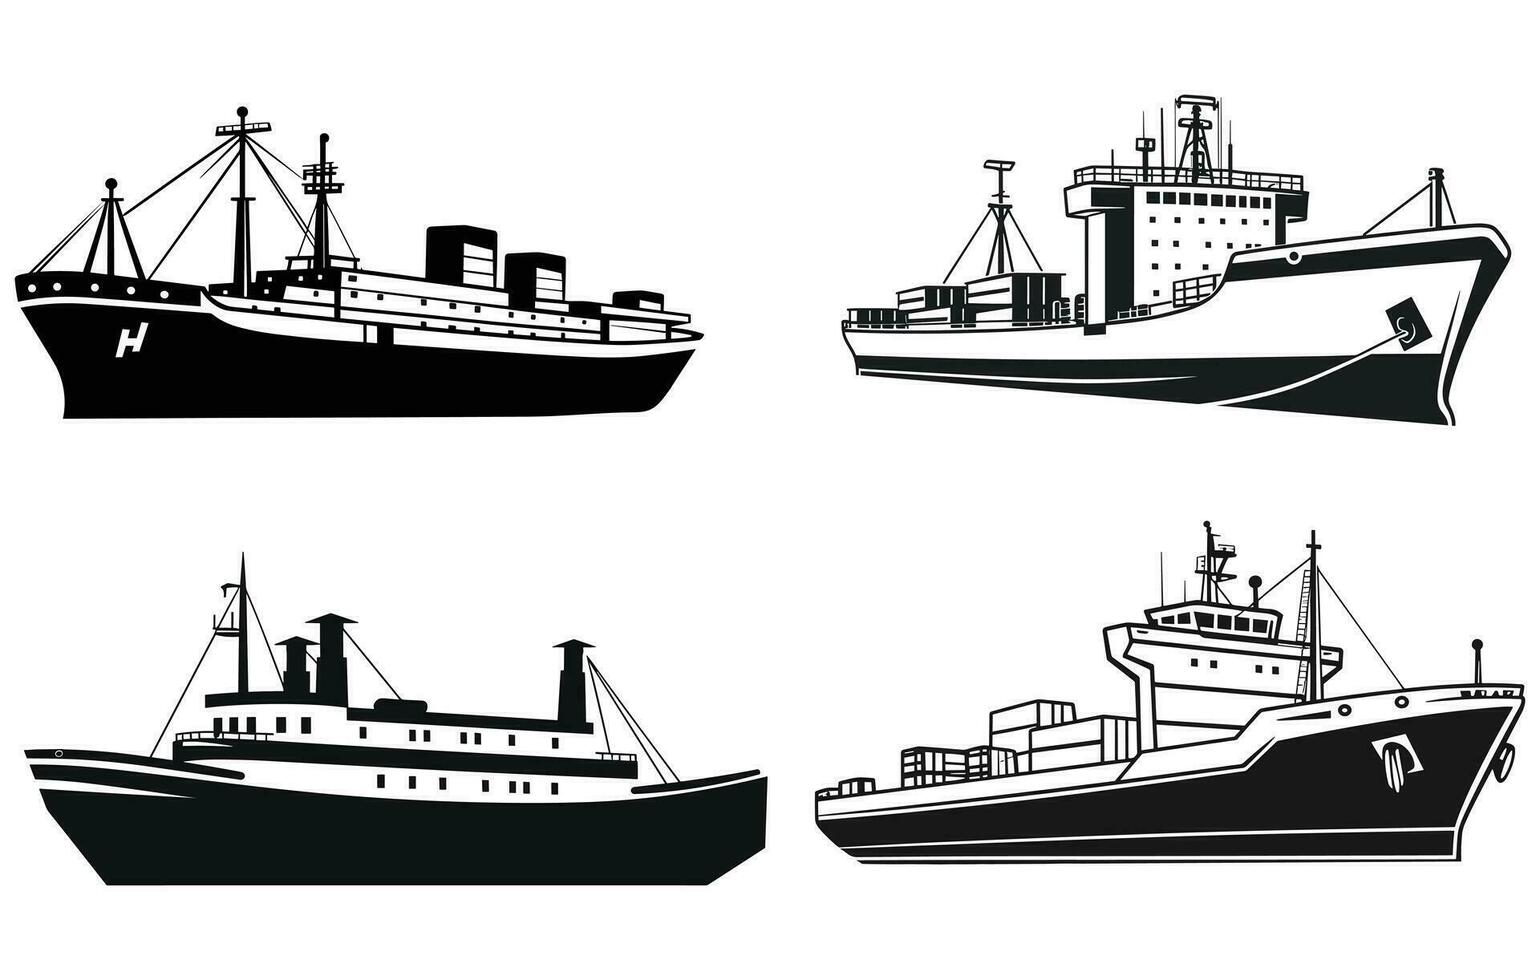 Cruise Ship Vector Silhouette,Ship sign icon, vector icon